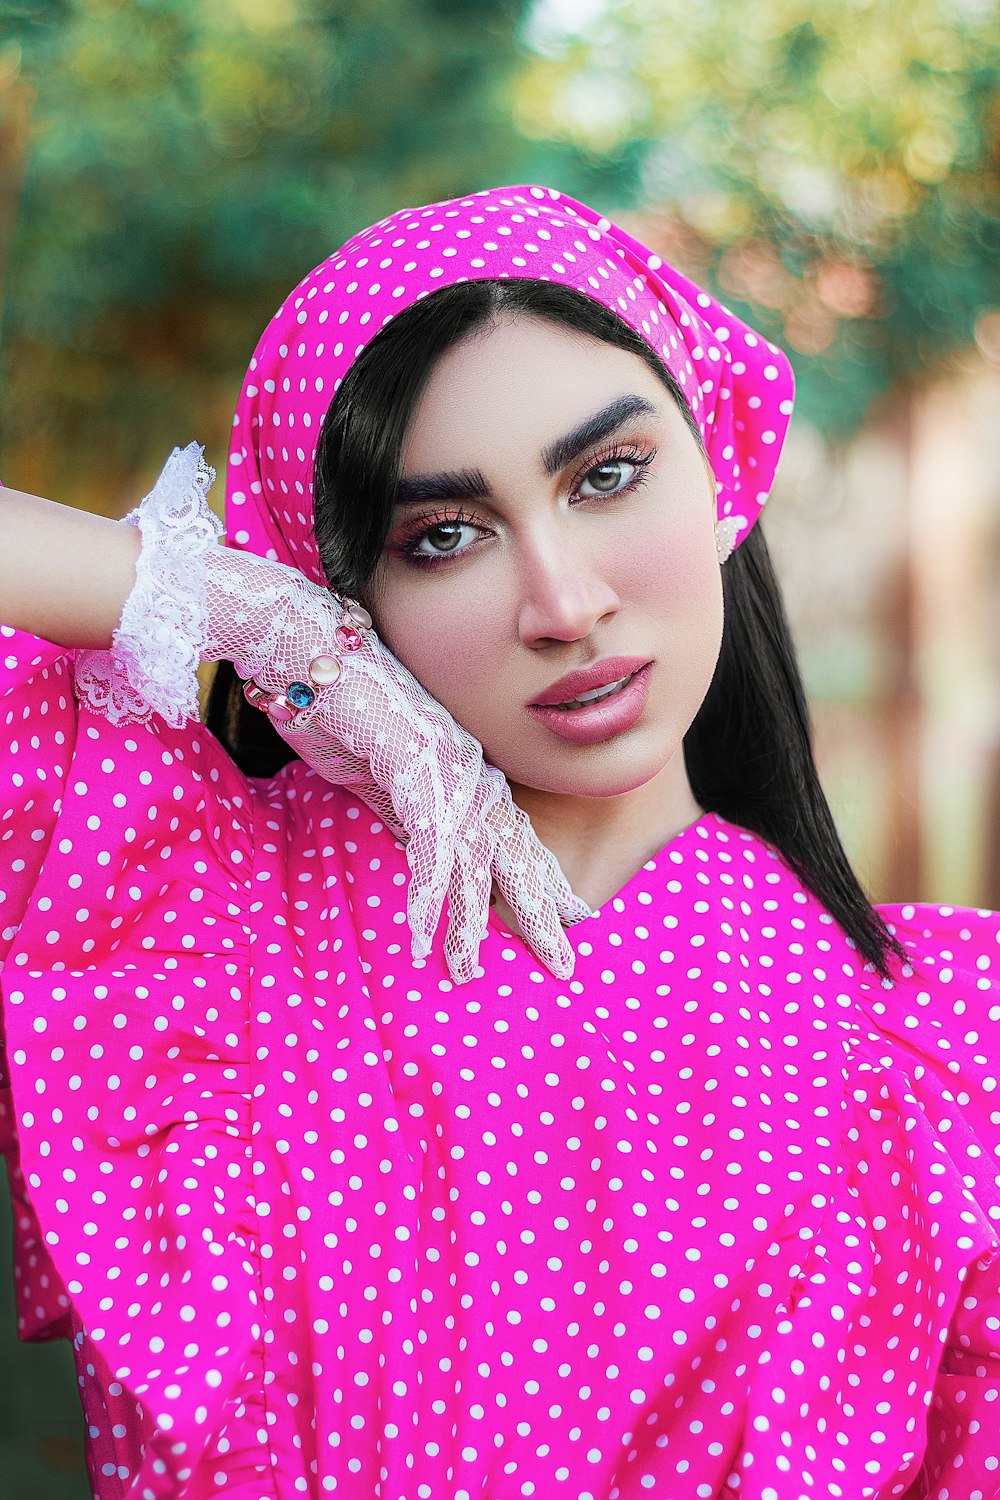 mulher no hijab rosa e branco das bolinhas